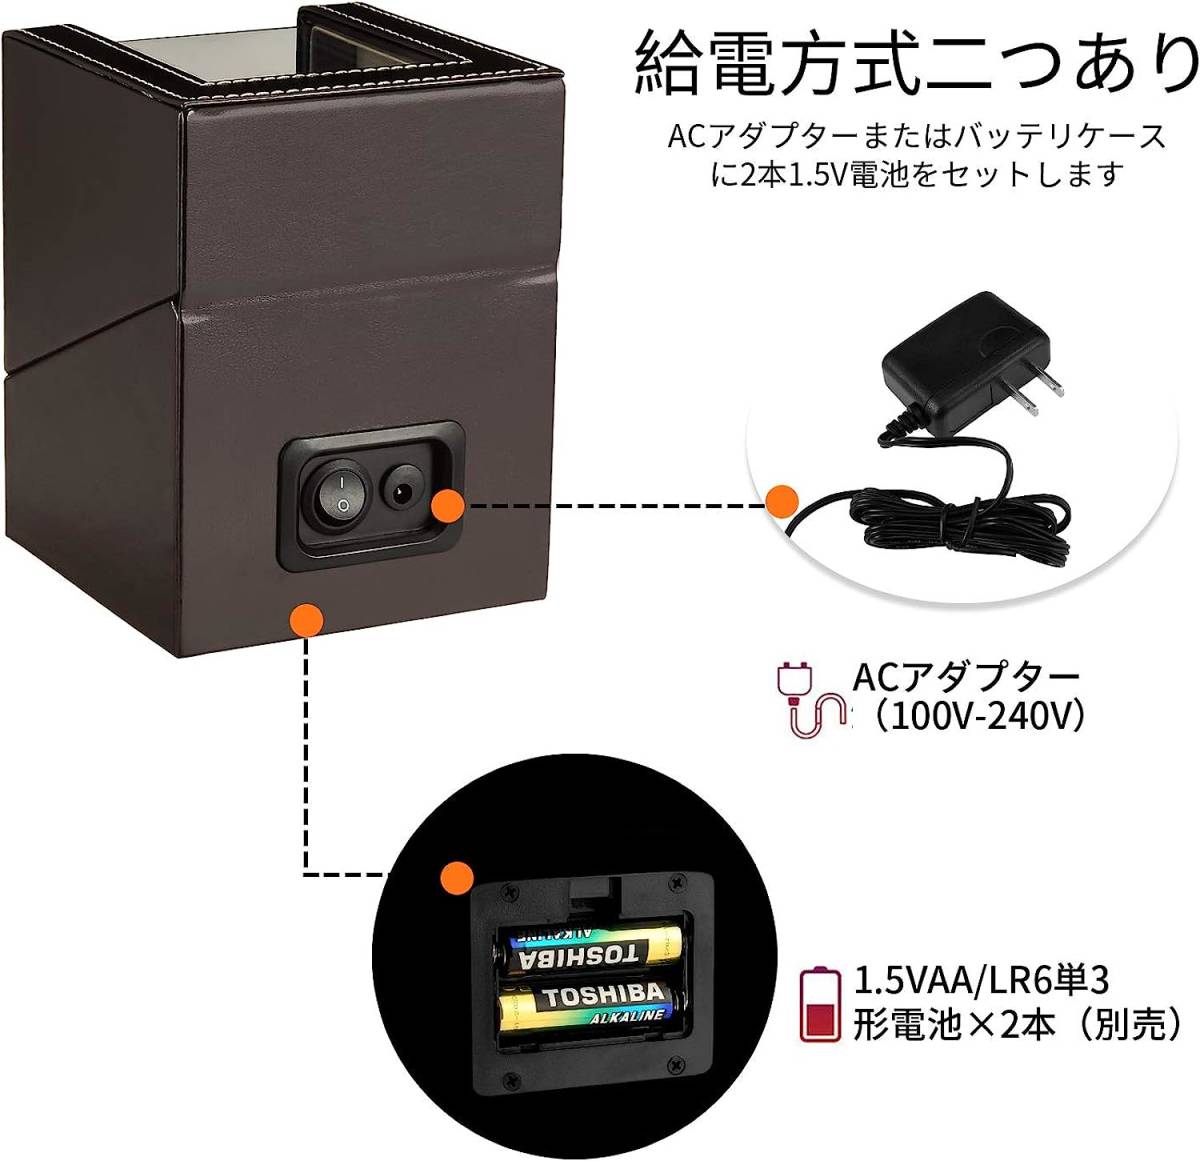 静音な日本製マブチモーター採用 自動巻き時計 ワインディングマシーン 自動巻き上げ機 高級PU皮質 ブラウン色 1本巻きタイプ_画像3